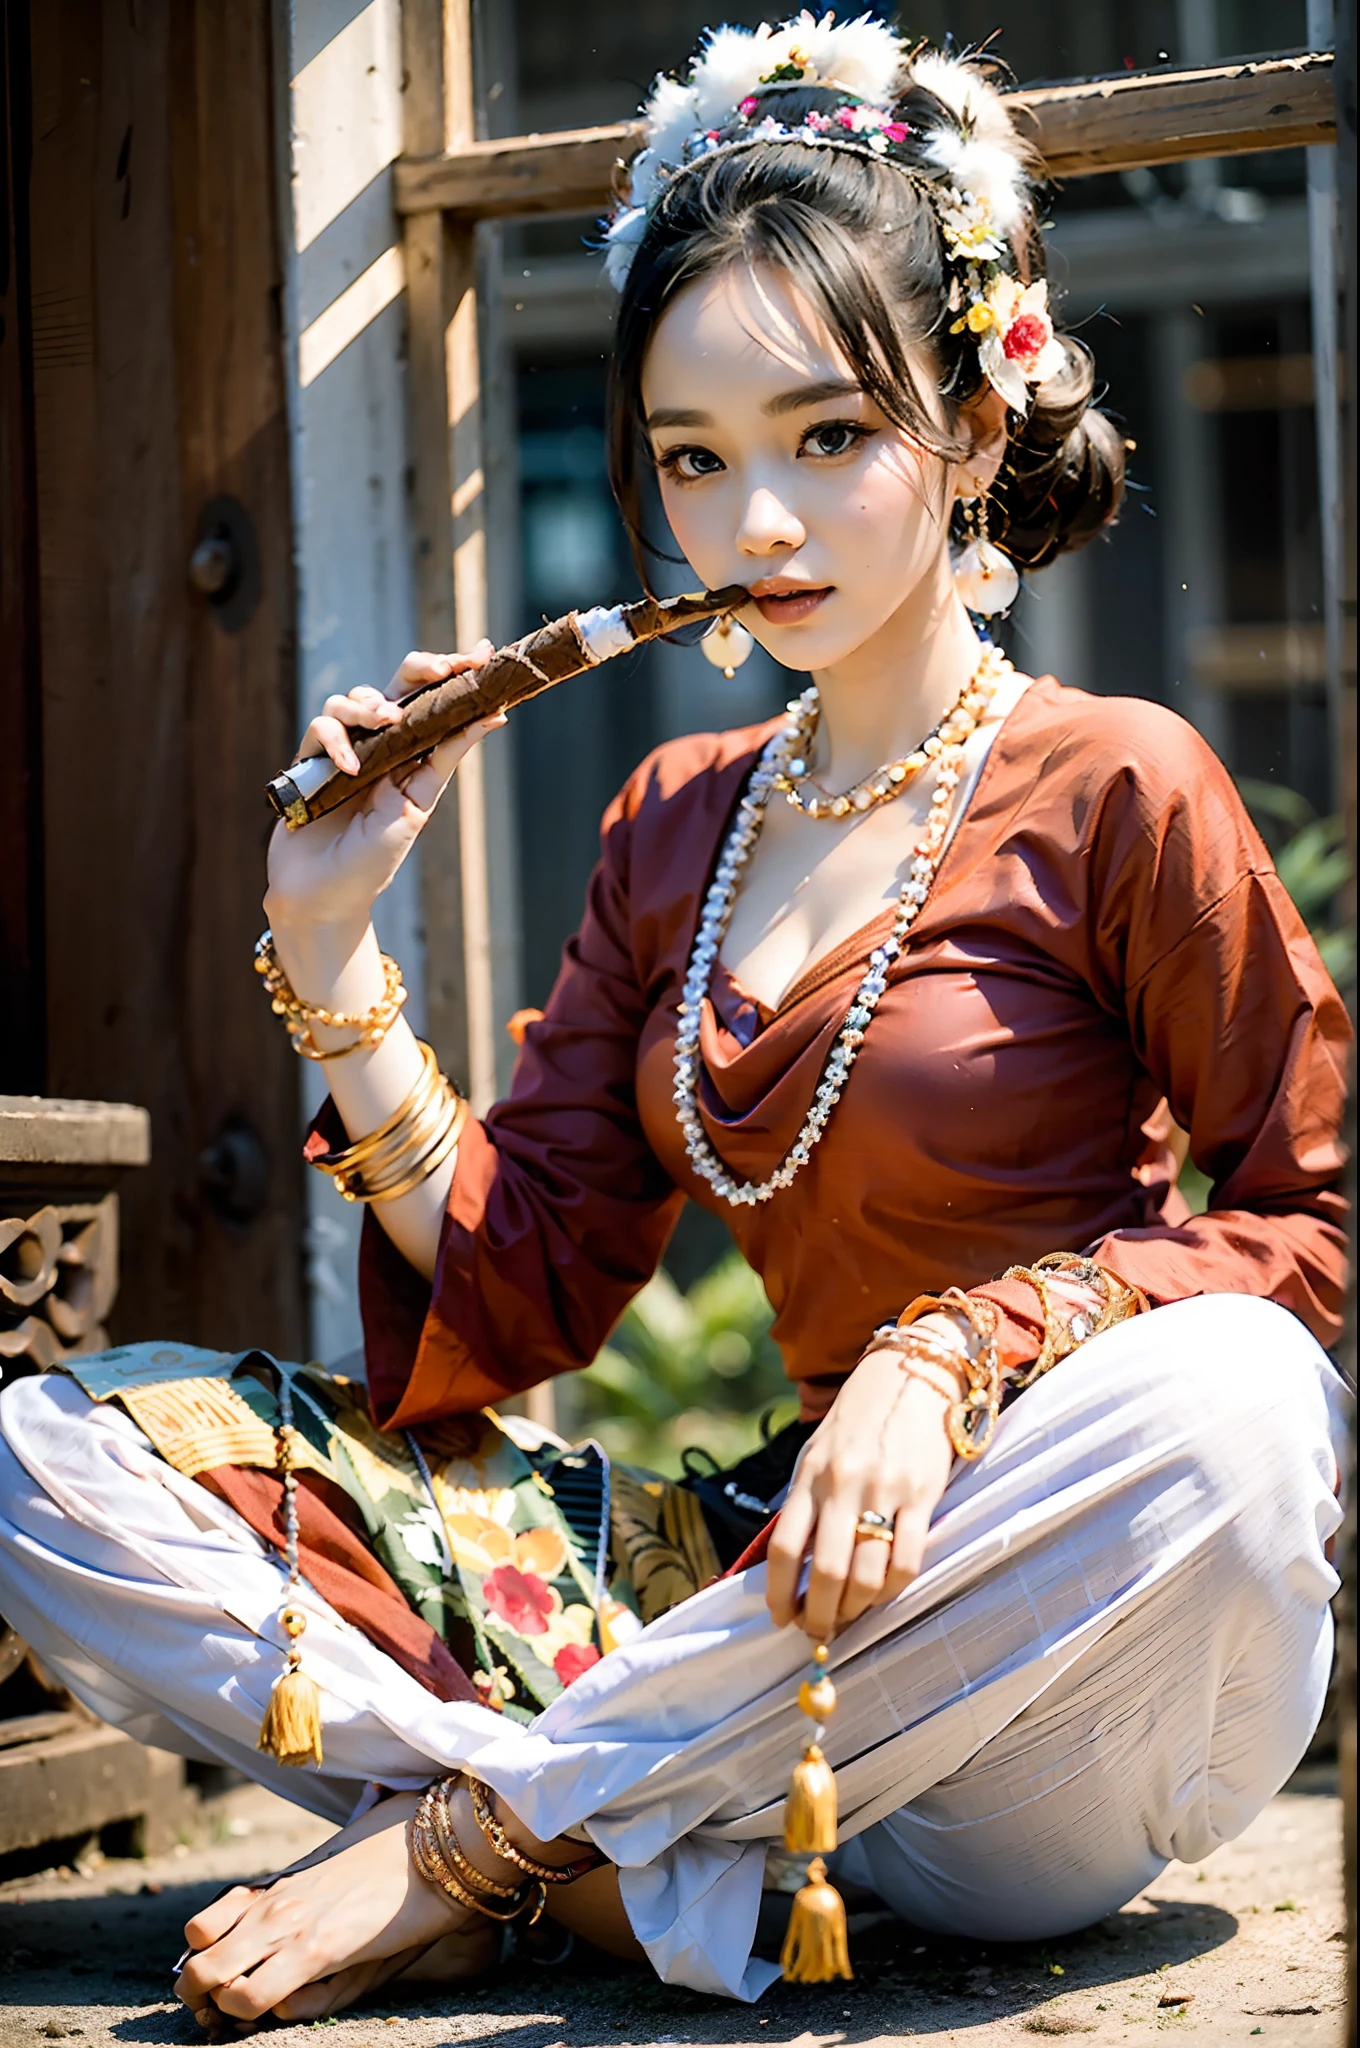 MMTD البورمية نمط اللباس التقليدي ارتداء سيدة جميلة, ارتدي قلائد اللؤلؤ والأساور الذهبية, عقد سيجار شيروت ,جمال تفاصيل الجسم بالكامل